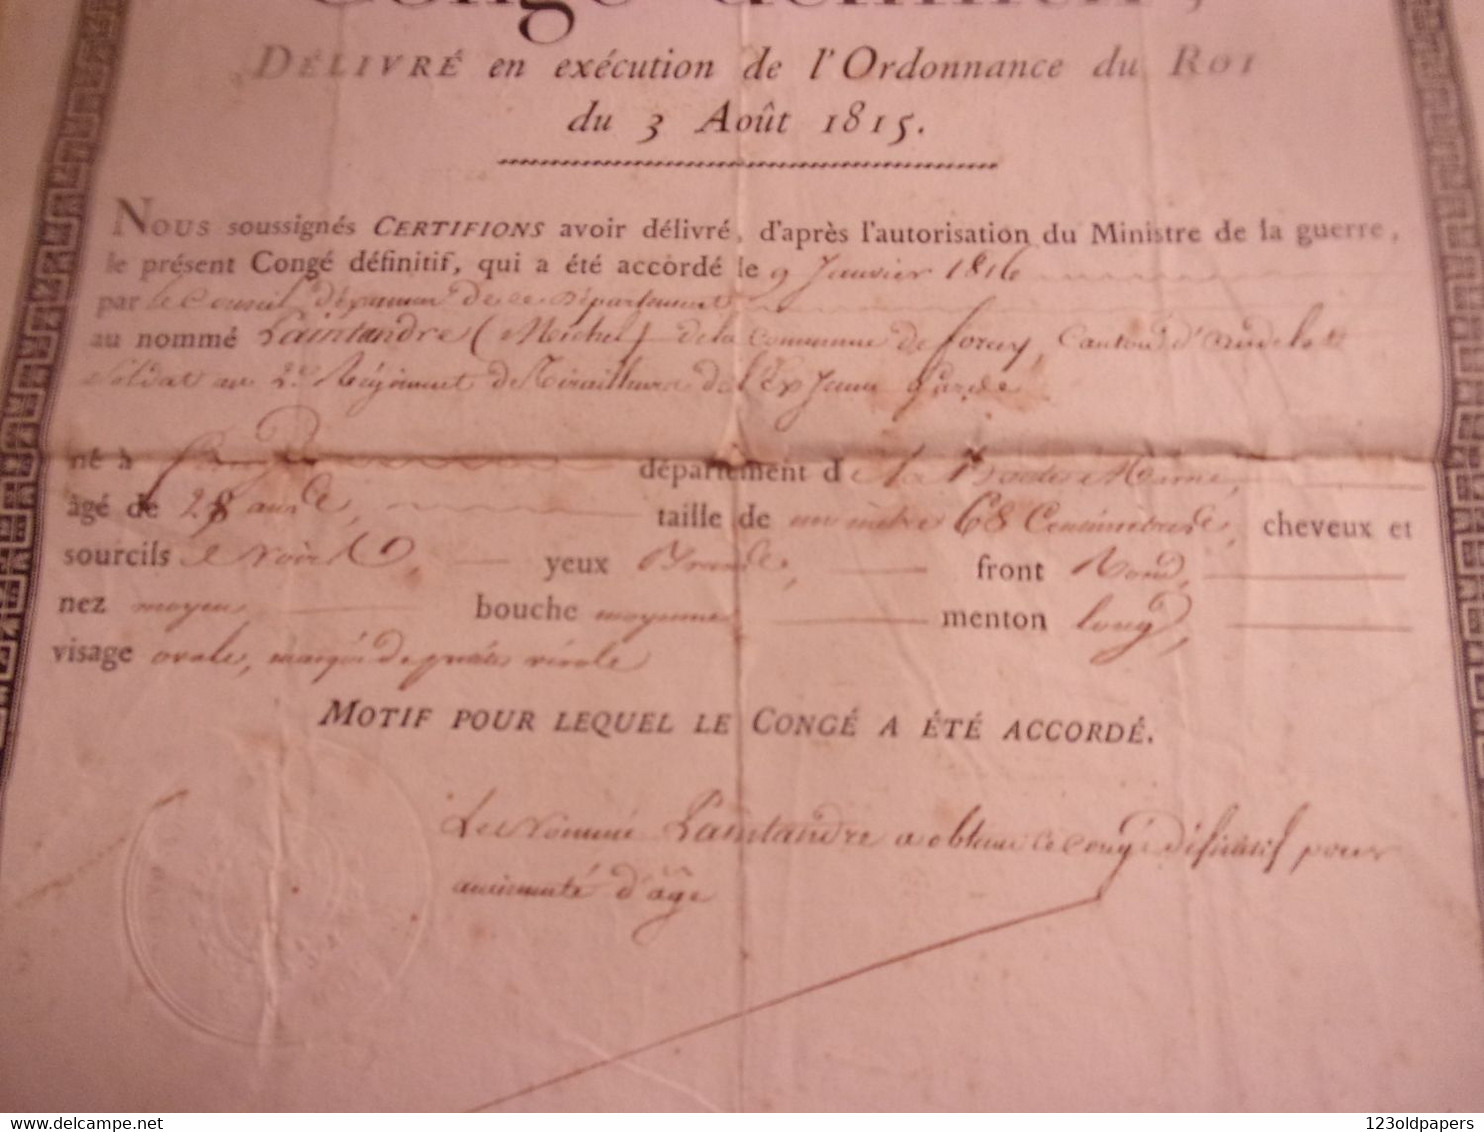 NAPOLEON GARDE IMPERIALE 1817 ROYAUME DE FRANCE CONGE DEFINITIF  FORCEY  2 EME REGIMENT TIRAILLEUR EX JEUNE GARDE - Dokumente